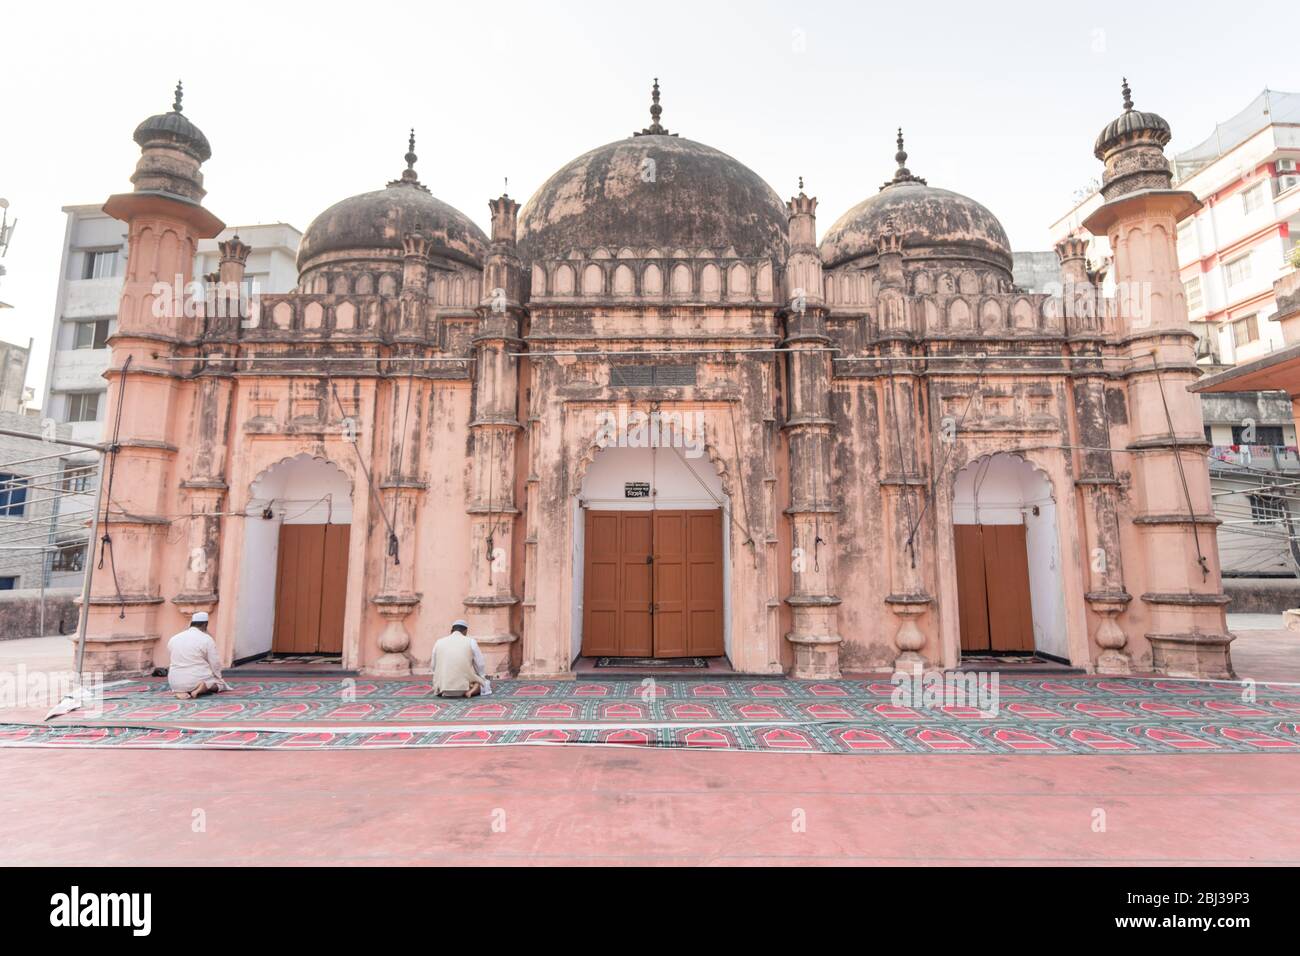 Dhaka / Bangladesh - 14 gennaio 2019: Vecchia moschea tradizionale di stile Mughal nel cuore della vecchia Dhaka Foto Stock